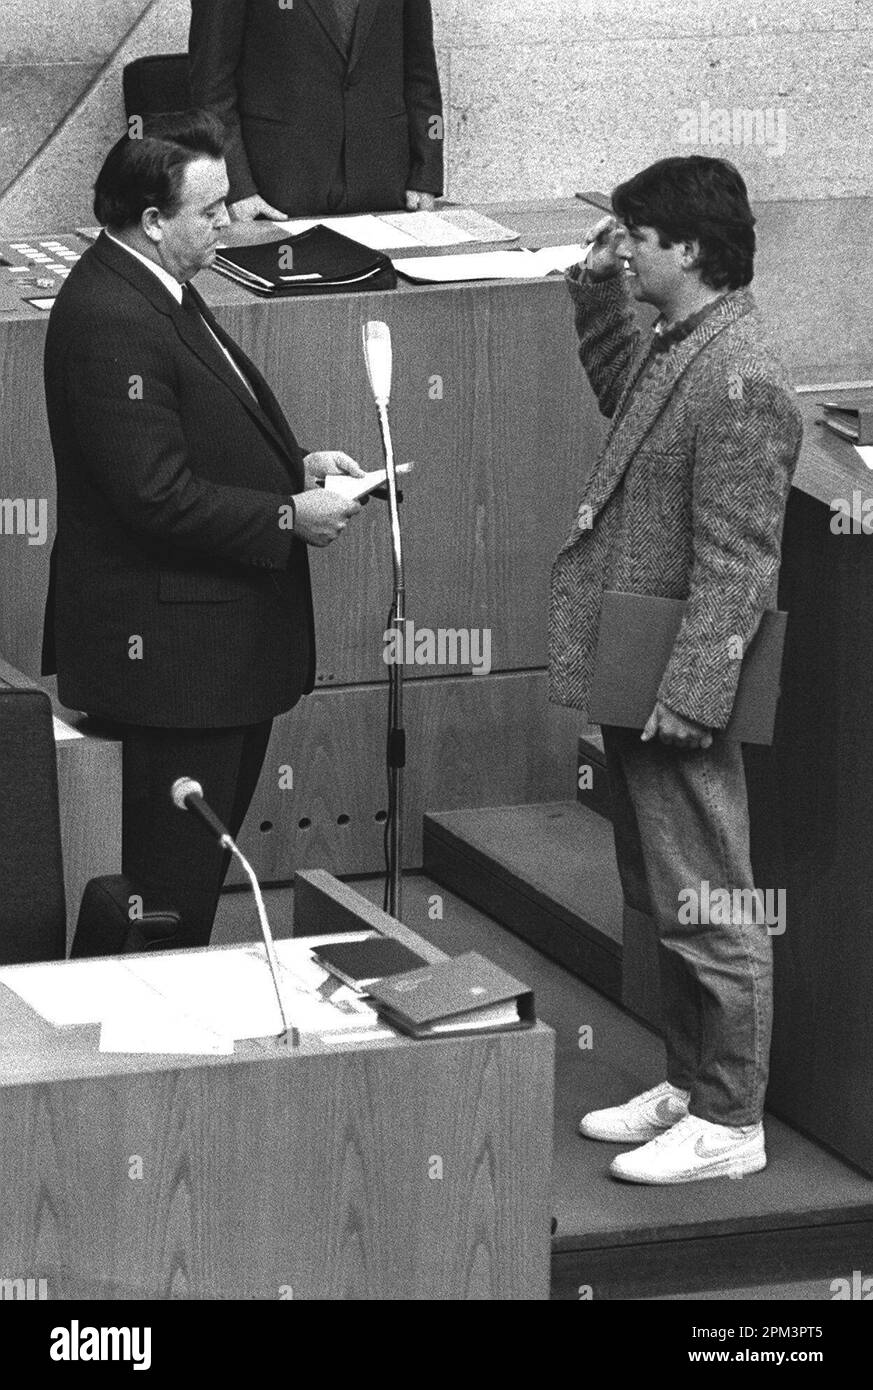 ARCHIVIATO - 12 dicembre 1985, Assia, Wiesbaden: Joschka Fischer (r, i Verdi) indossa scarpe da ginnastica come giurato come Ministro per l'ambiente e l'energia nel parlamento di Stato da Holger Börner (CDU), allora primo Ministro dell'Assia. Fischer, portavoce del gruppo parlamentare Alleanza 90/Verdi nel Bundestag tedesco dal 1994 al 1998, e ministro degli Esteri e vice cancelliere tedesco dal 1998 al 2005, è nato a Gerabronn, Baden-Württemberg, il 12 aprile 1948. Foto: Immagine alleanza/dpa Foto Stock